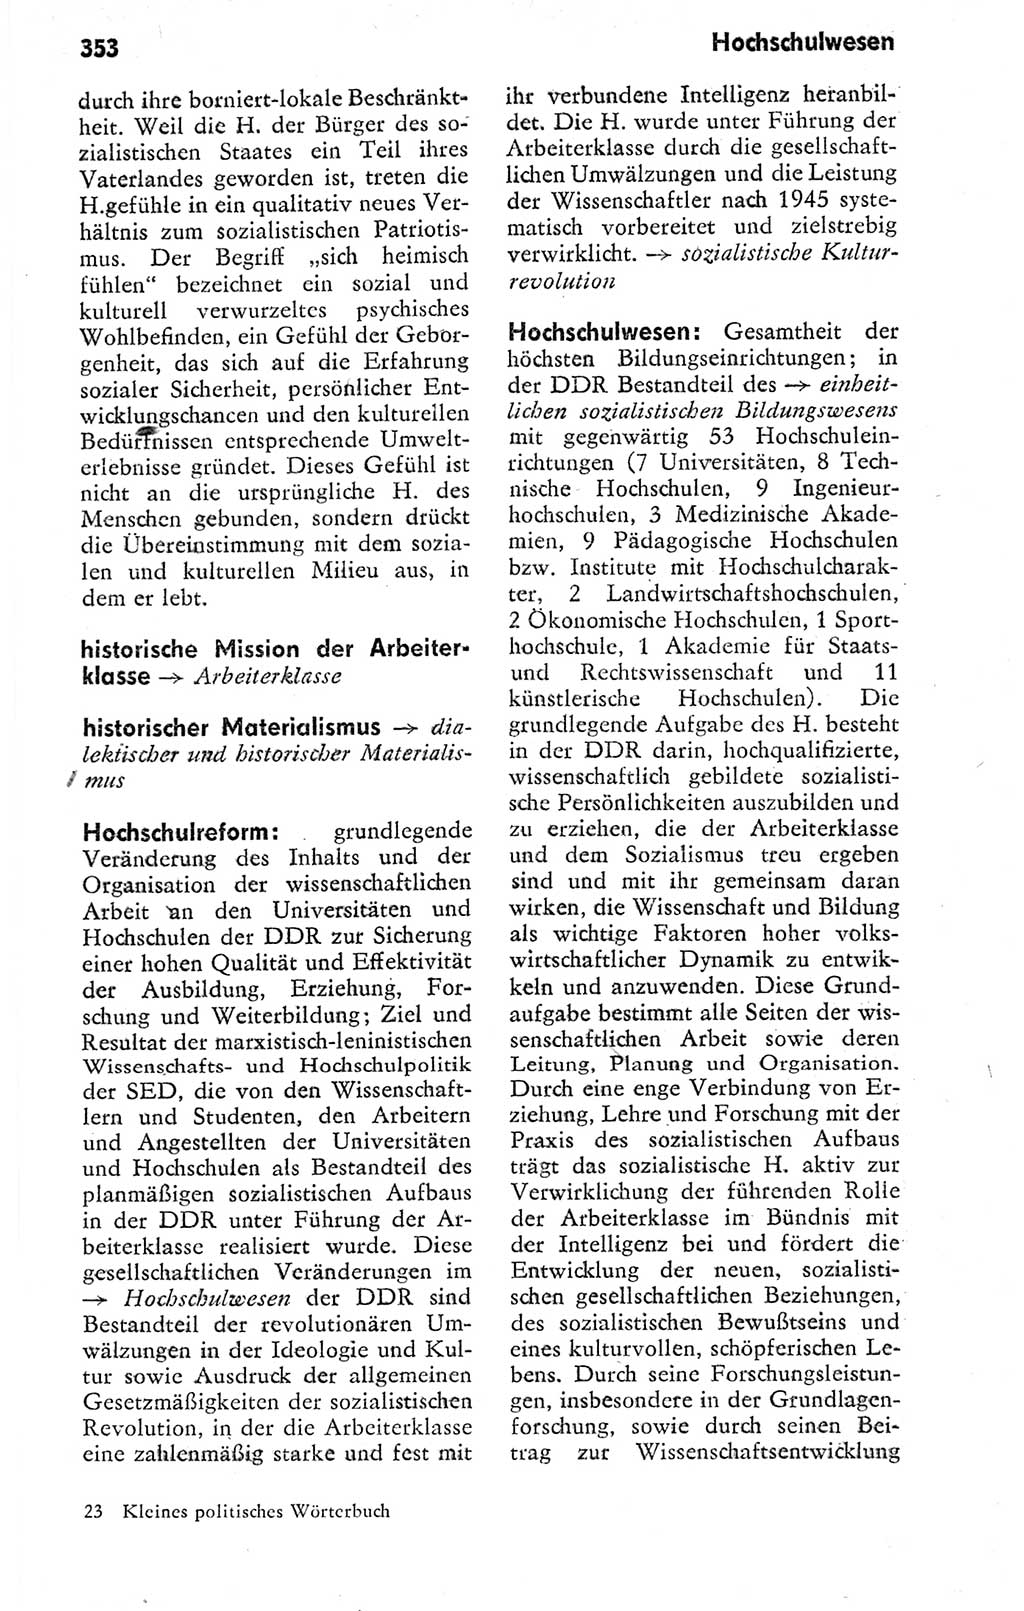 Kleines politisches Wörterbuch [Deutsche Demokratische Republik (DDR)] 1978, Seite 353 (Kl. pol. Wb. DDR 1978, S. 353)